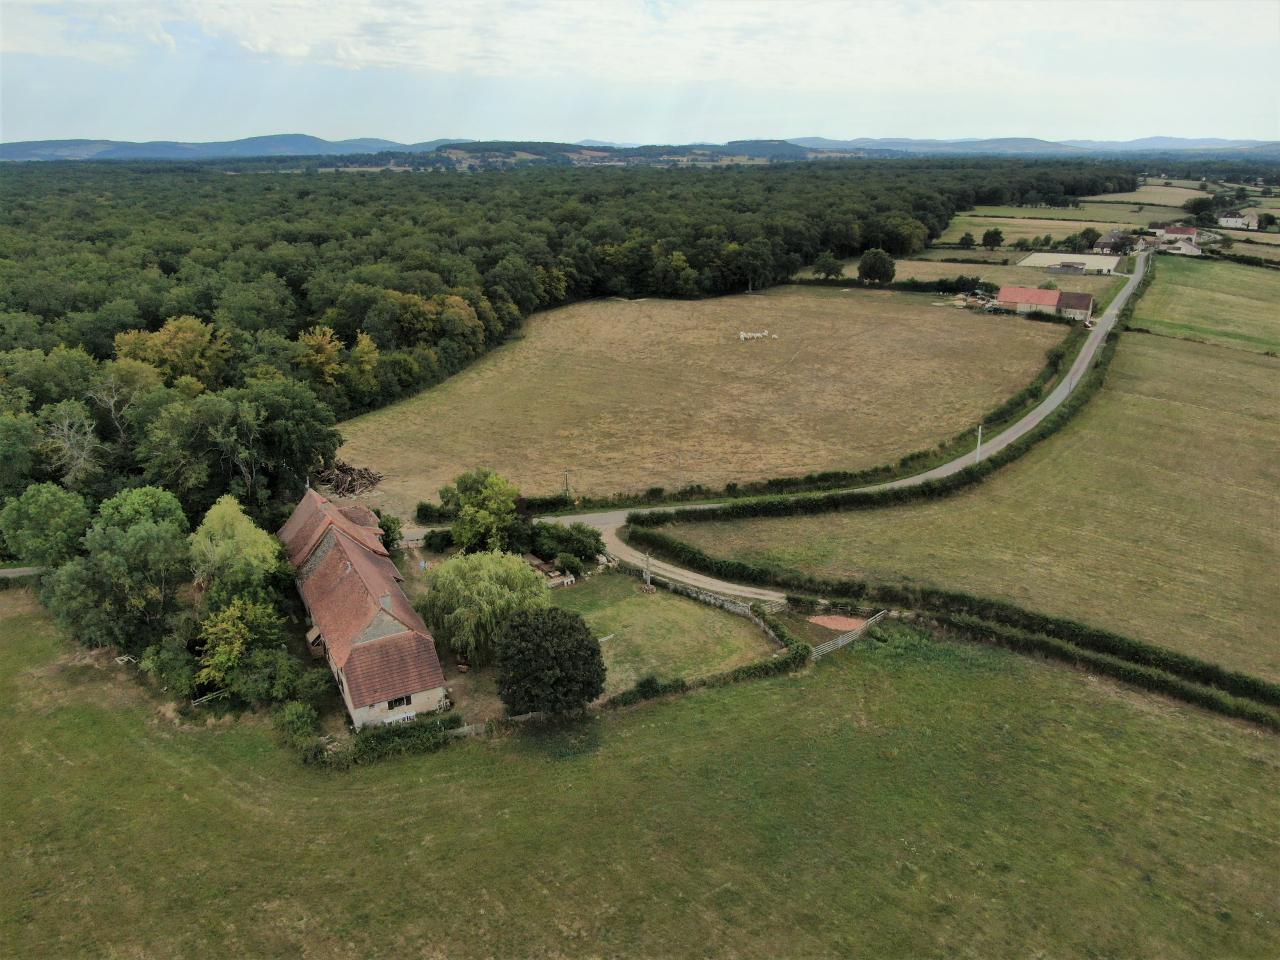 Hôte GreenGo: Gîte de campagne "La Chavoche" situé en lisière de bois et à proximité d’une rivière - Bourgogne - Image 36